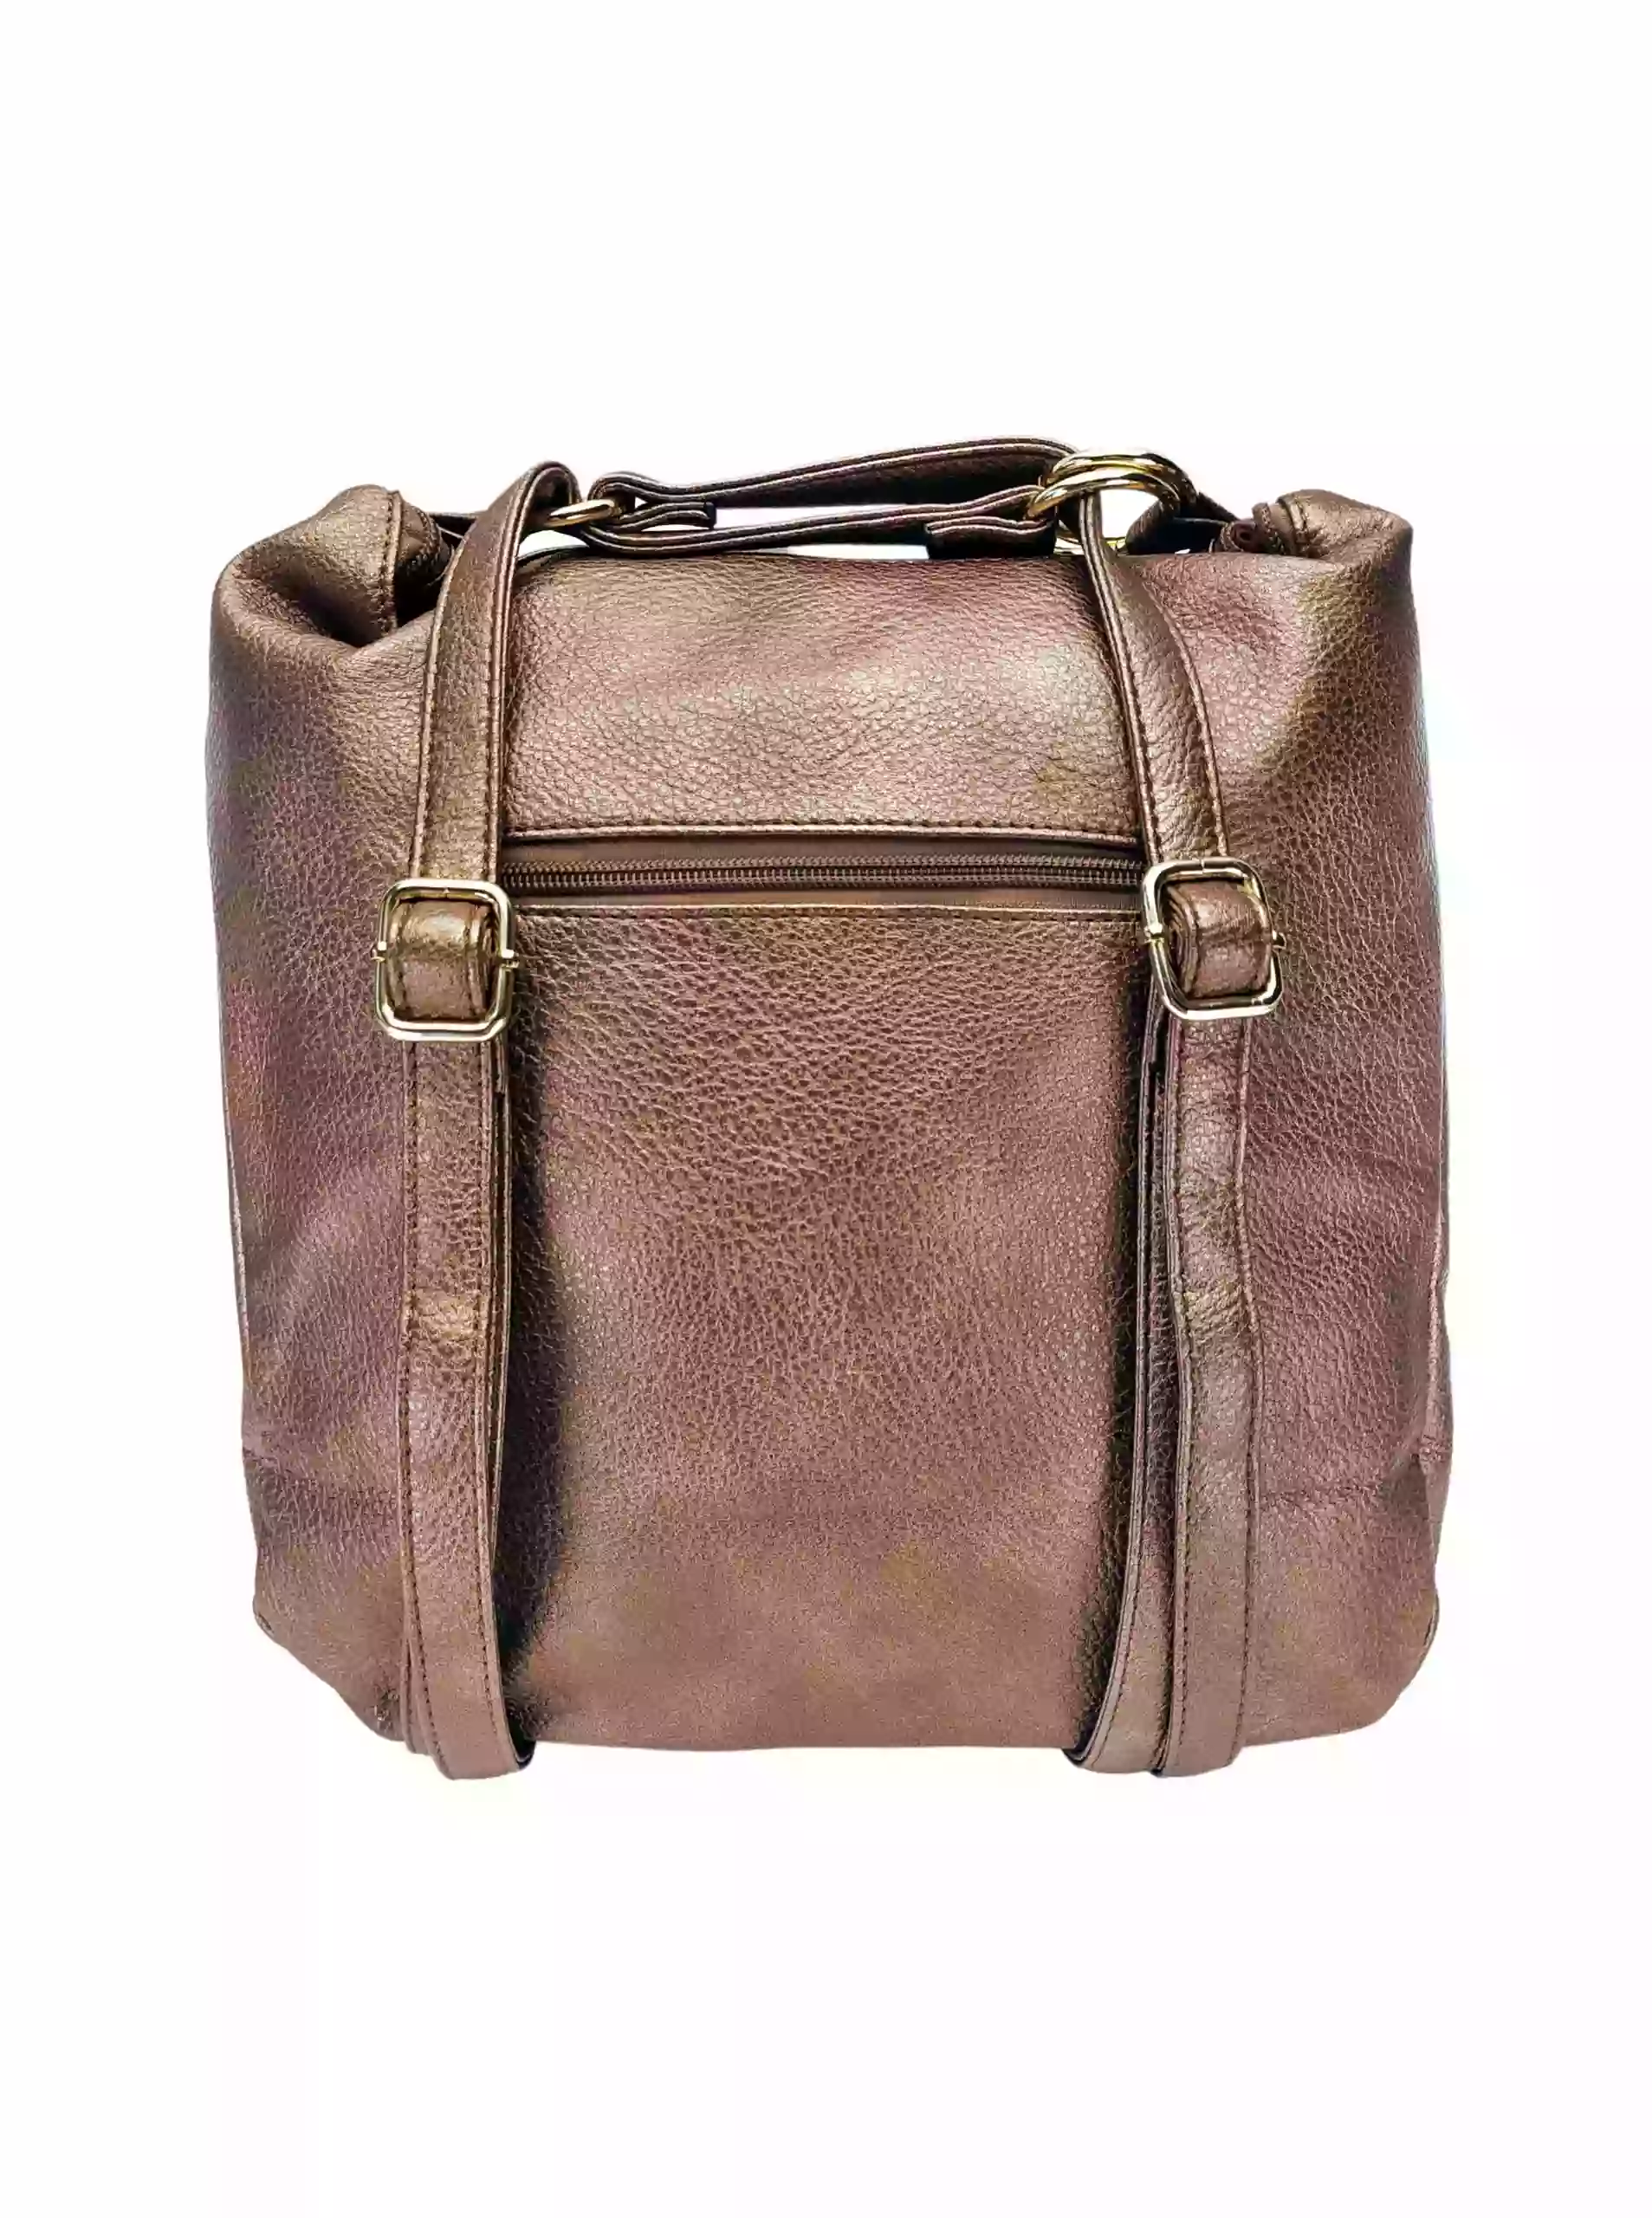 Velký bronzový kabelko-batoh 2v1 s kapsou, Int. Company, H23, zadní strana kabelko-batohu s popruhy